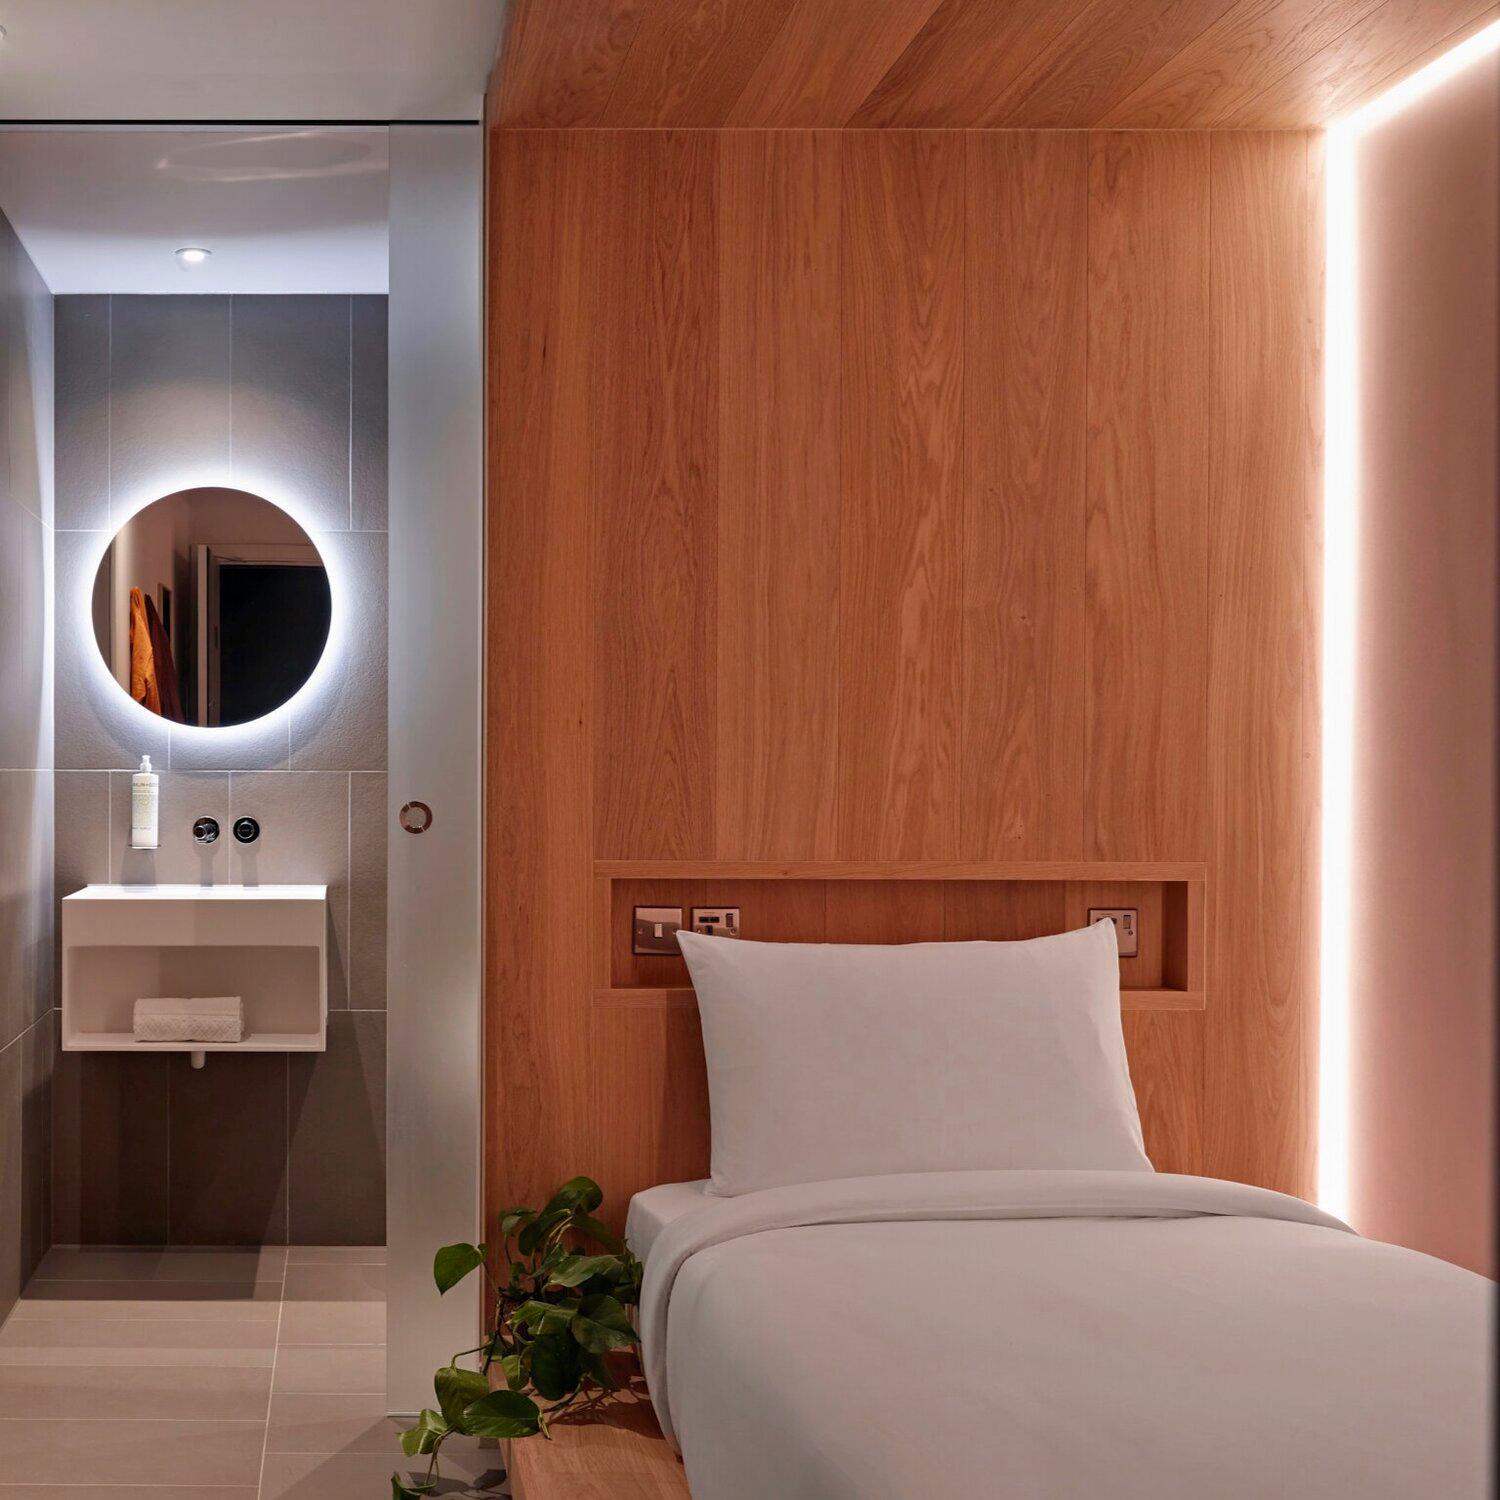 På hotellet Zedwell i London sover man i ljudisolerade rum utan fönster och i sängar som liknar träkokonger. 